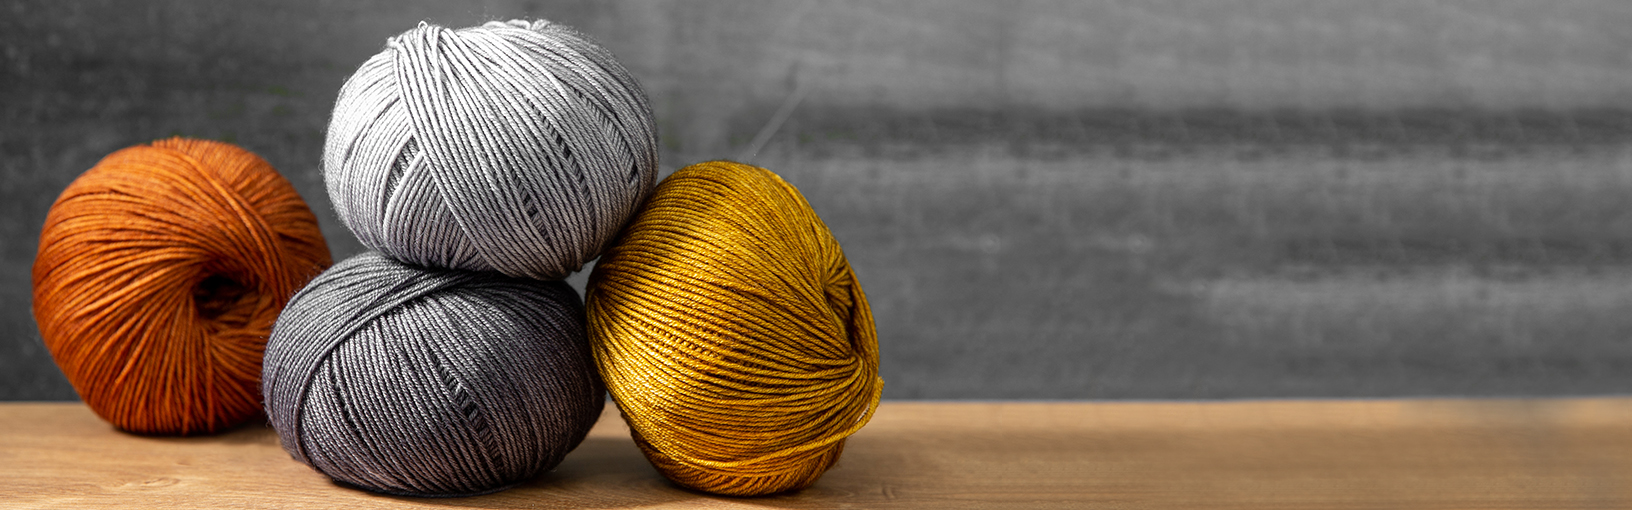 Filati di alta qualità per lavorare a maglia, uncinetto e infeltrimento Filati Lana Grossa | Stile di campagna